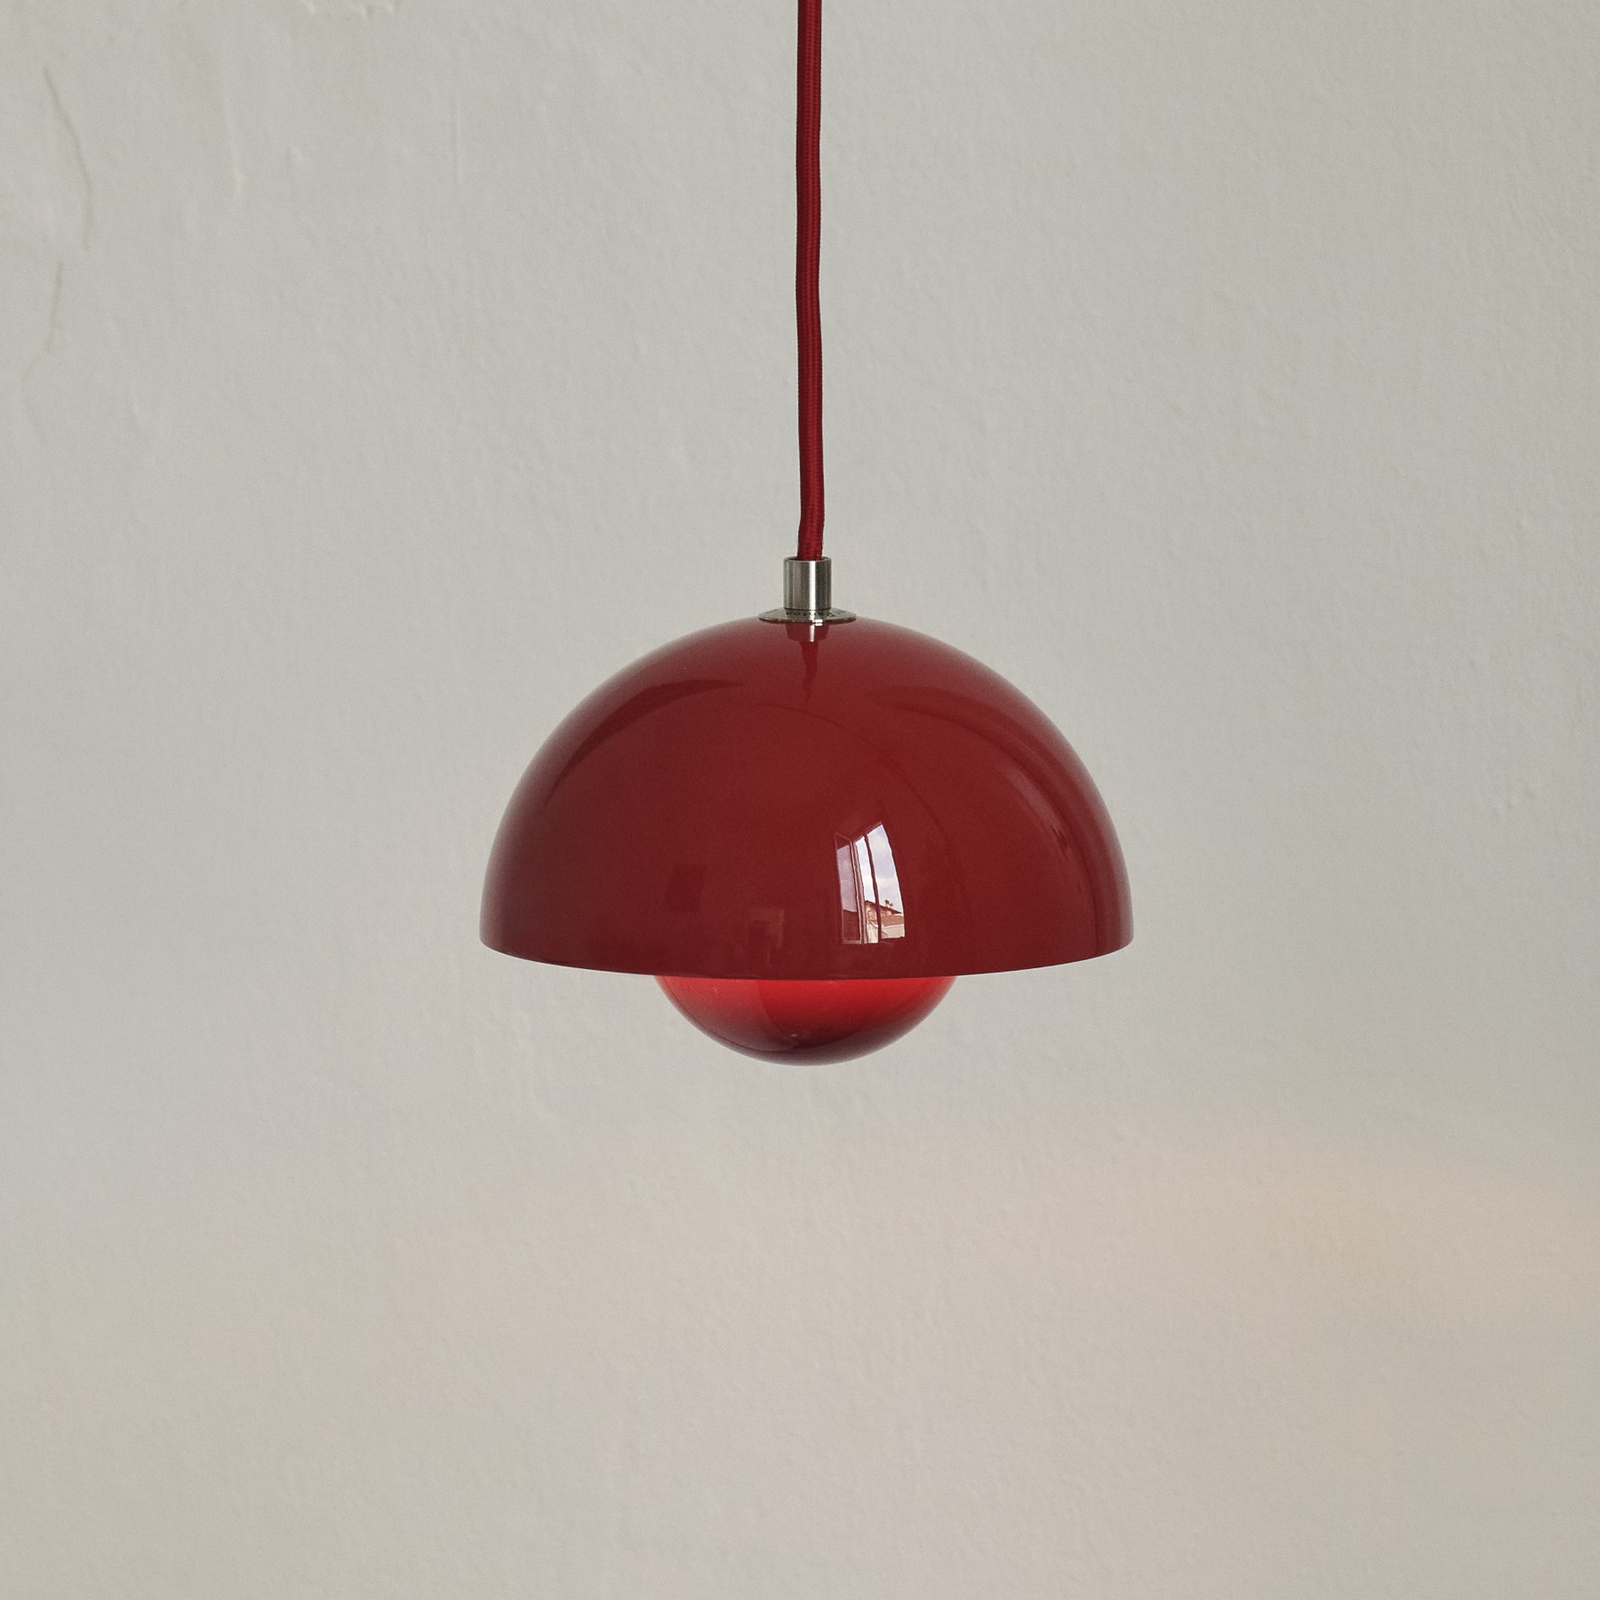 &Luminária suspensa Tradição Flowerpot VP10, Ø 16 cm, vermelho vermelhão